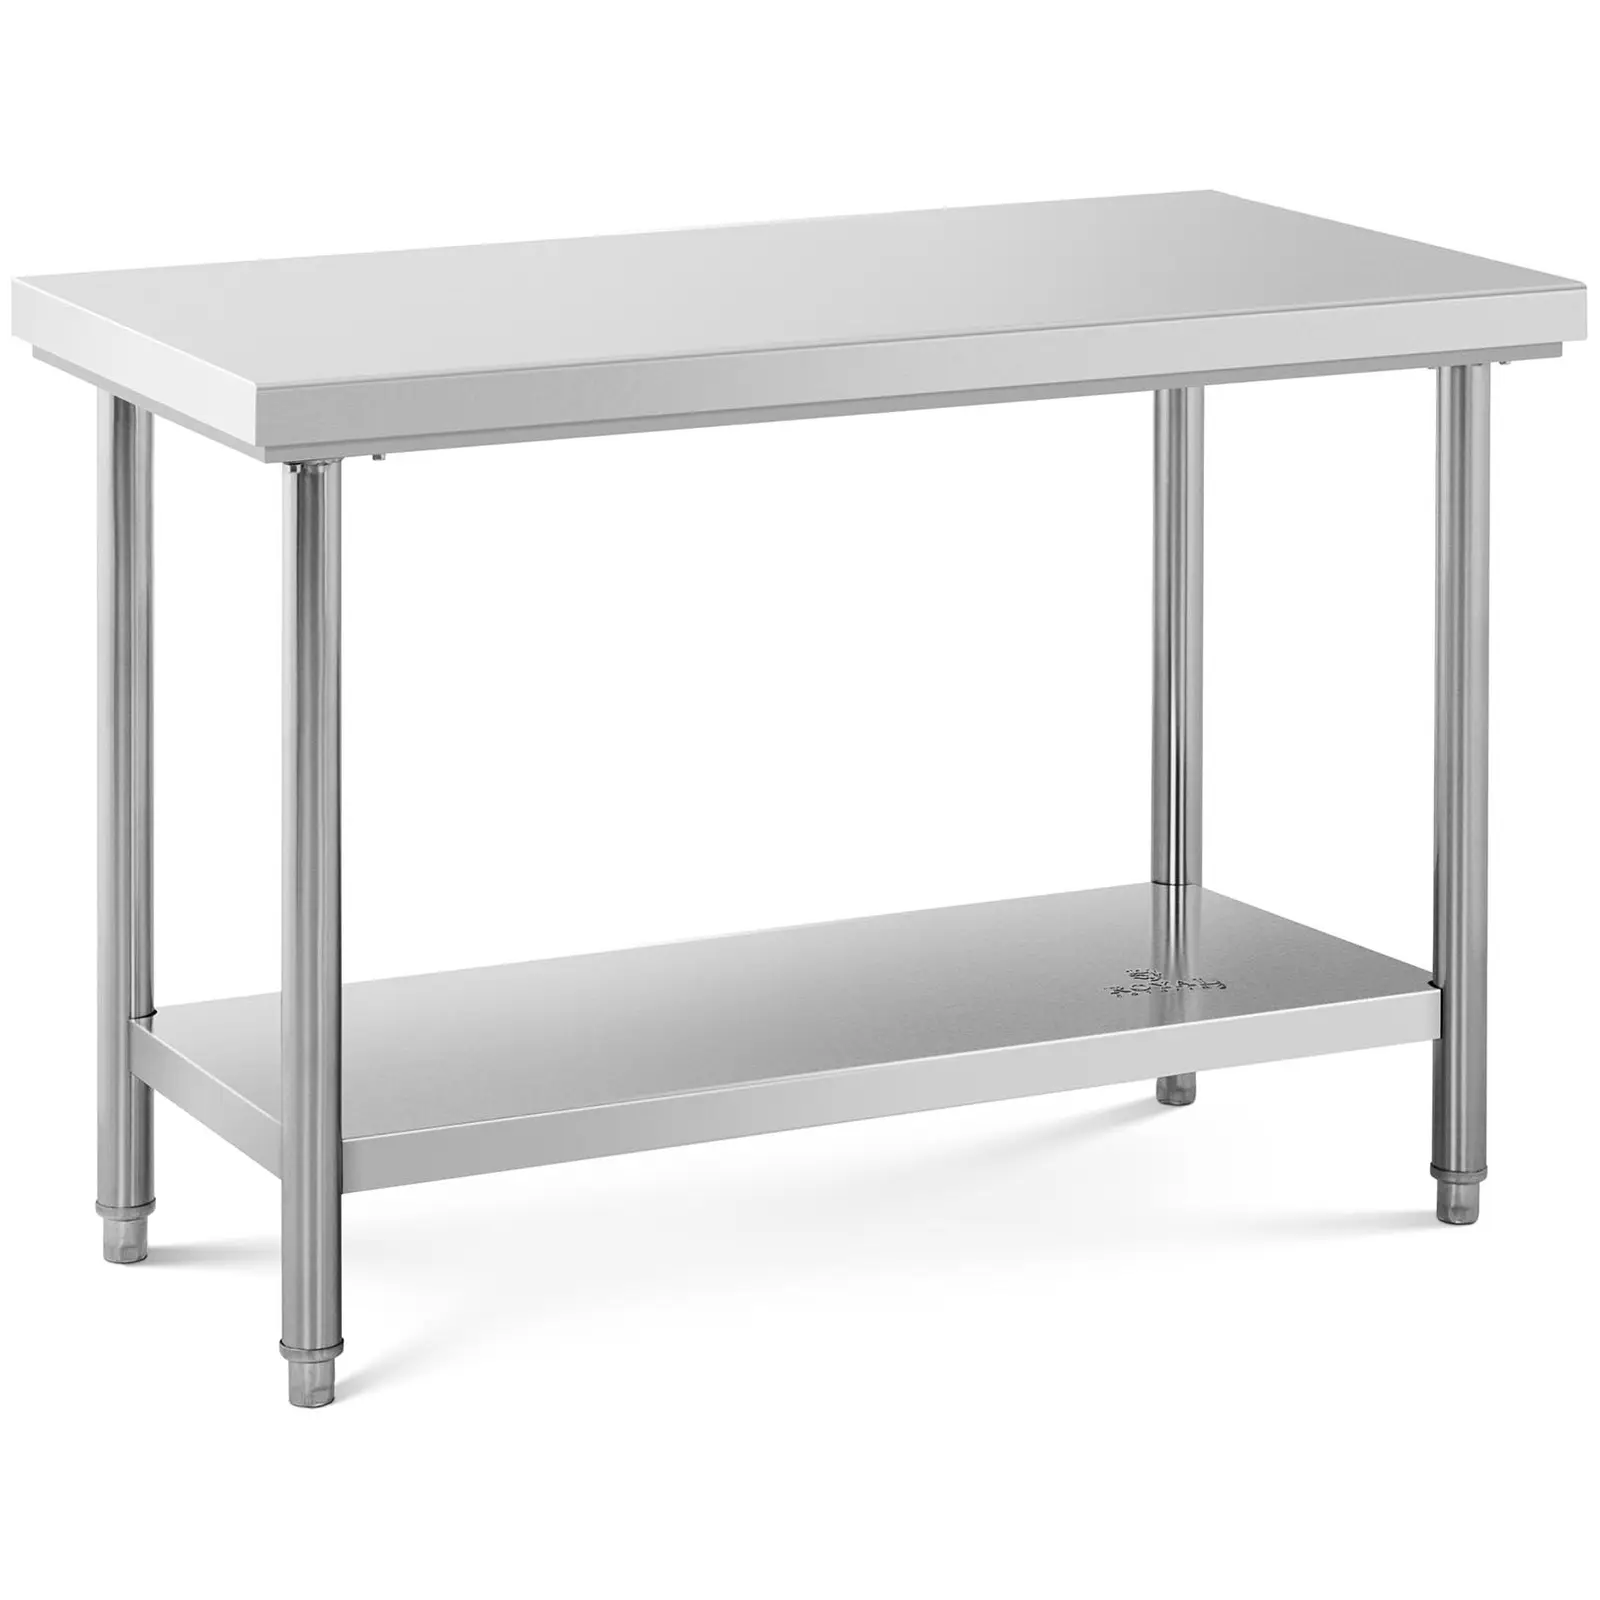 Werktafel – rvs werktafel - 120 x 60 cm - 137 kg capaciteit